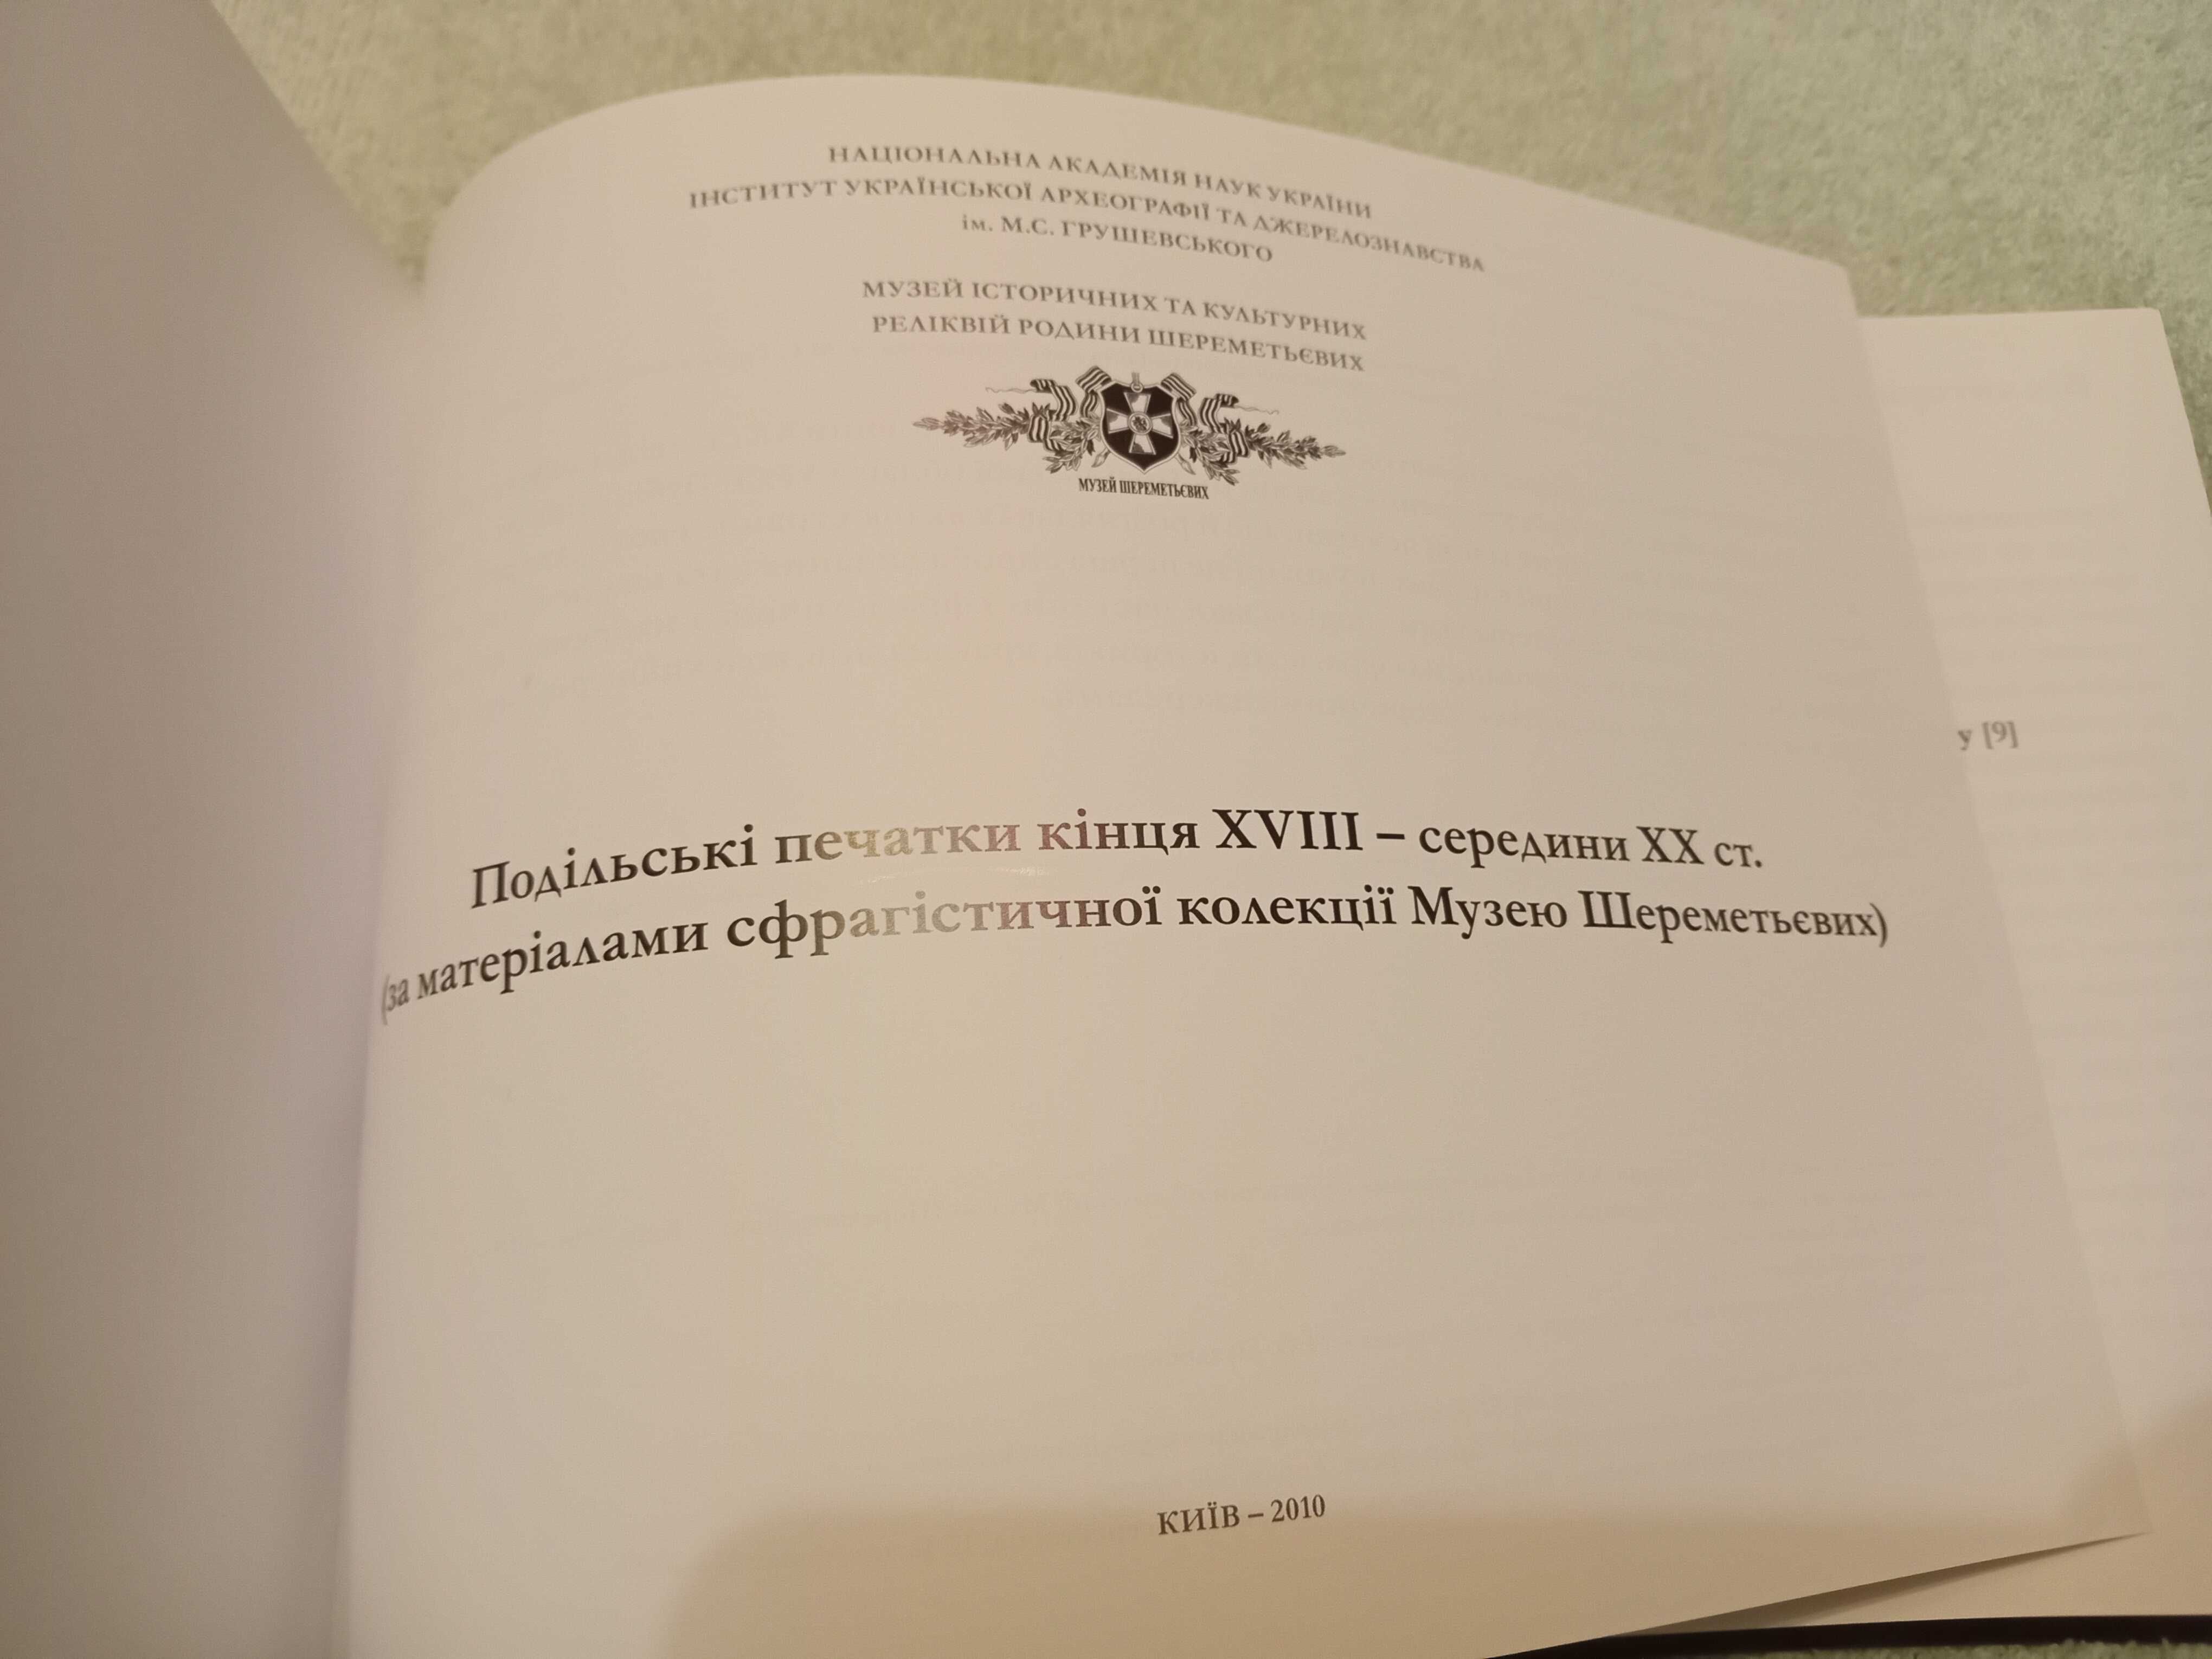 Книга Подільські печатки кінця xvlll - сепединм xx століття.